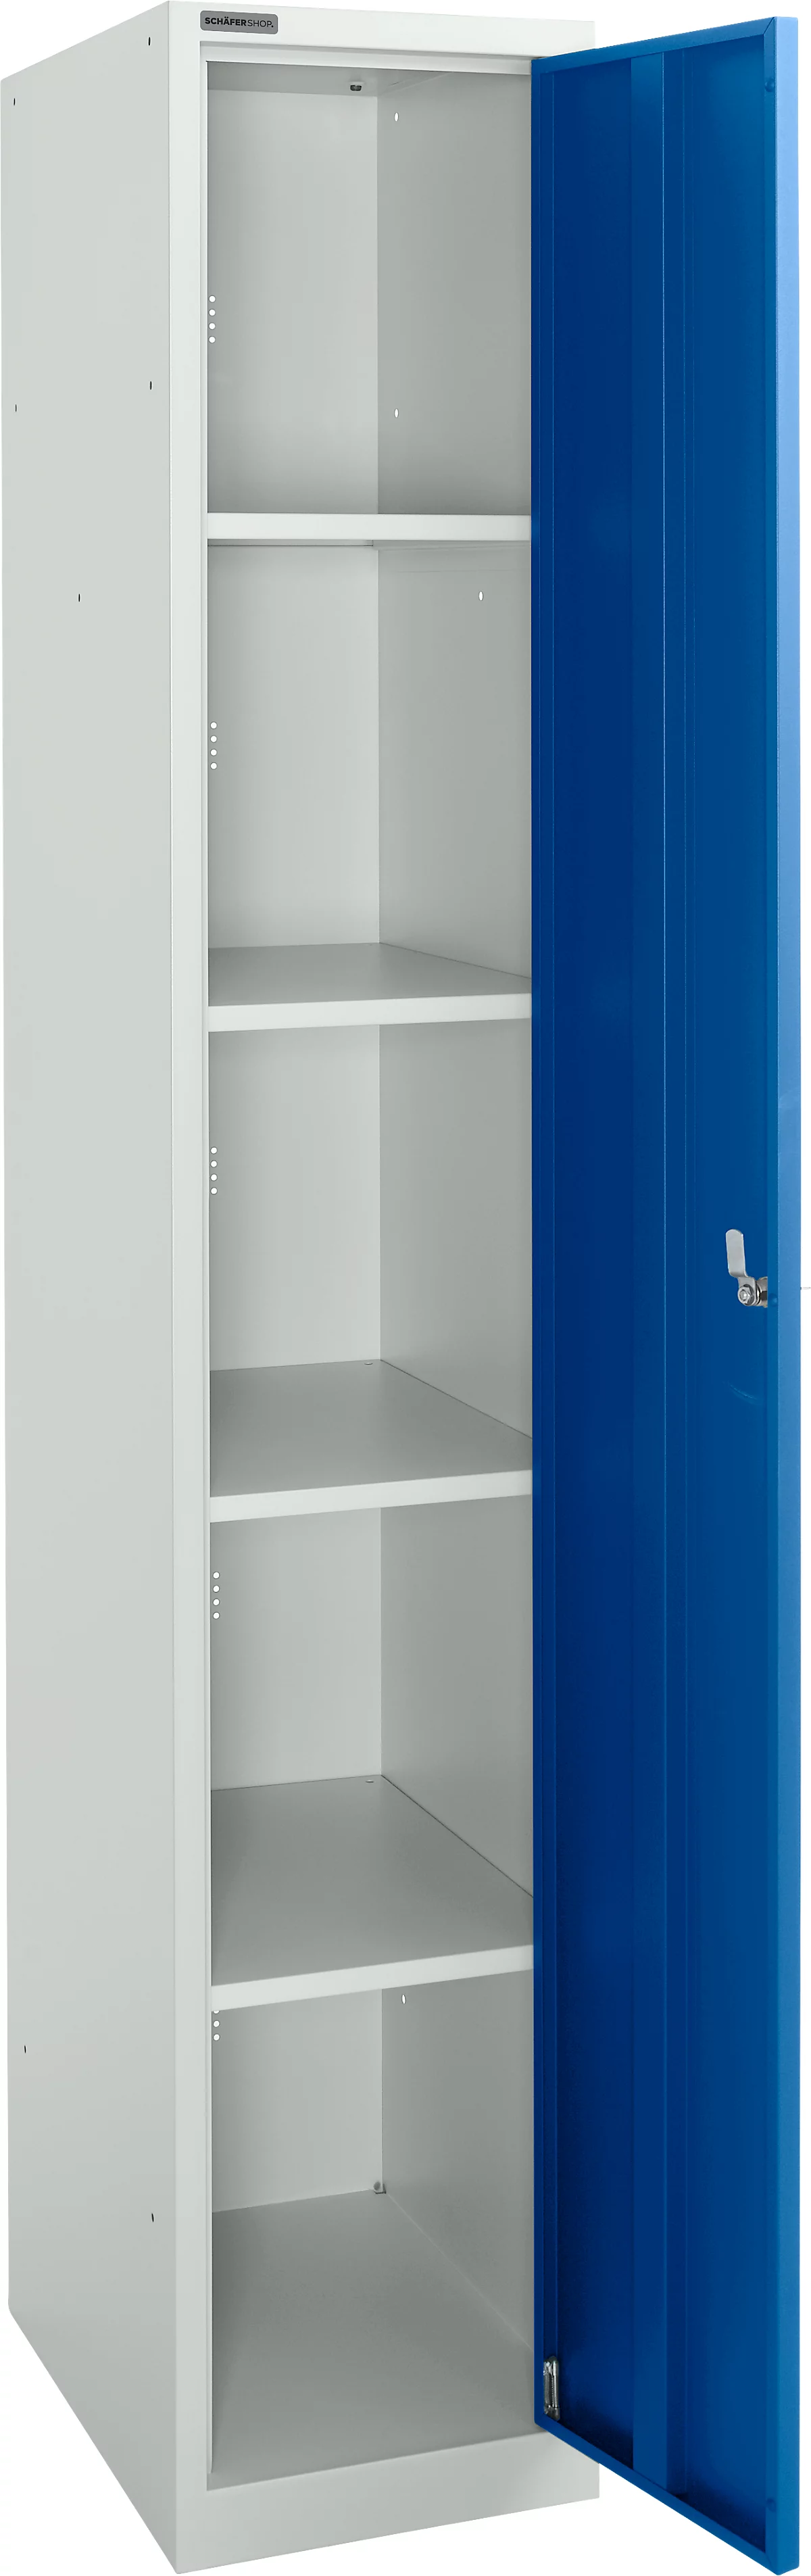 Schäfer Shop Select Garderobenschrank, 1 Abteil mit B 350 mm, 5 Fächer mit 4 Fachböden, abschließbar, lichtgrau/enzianblau